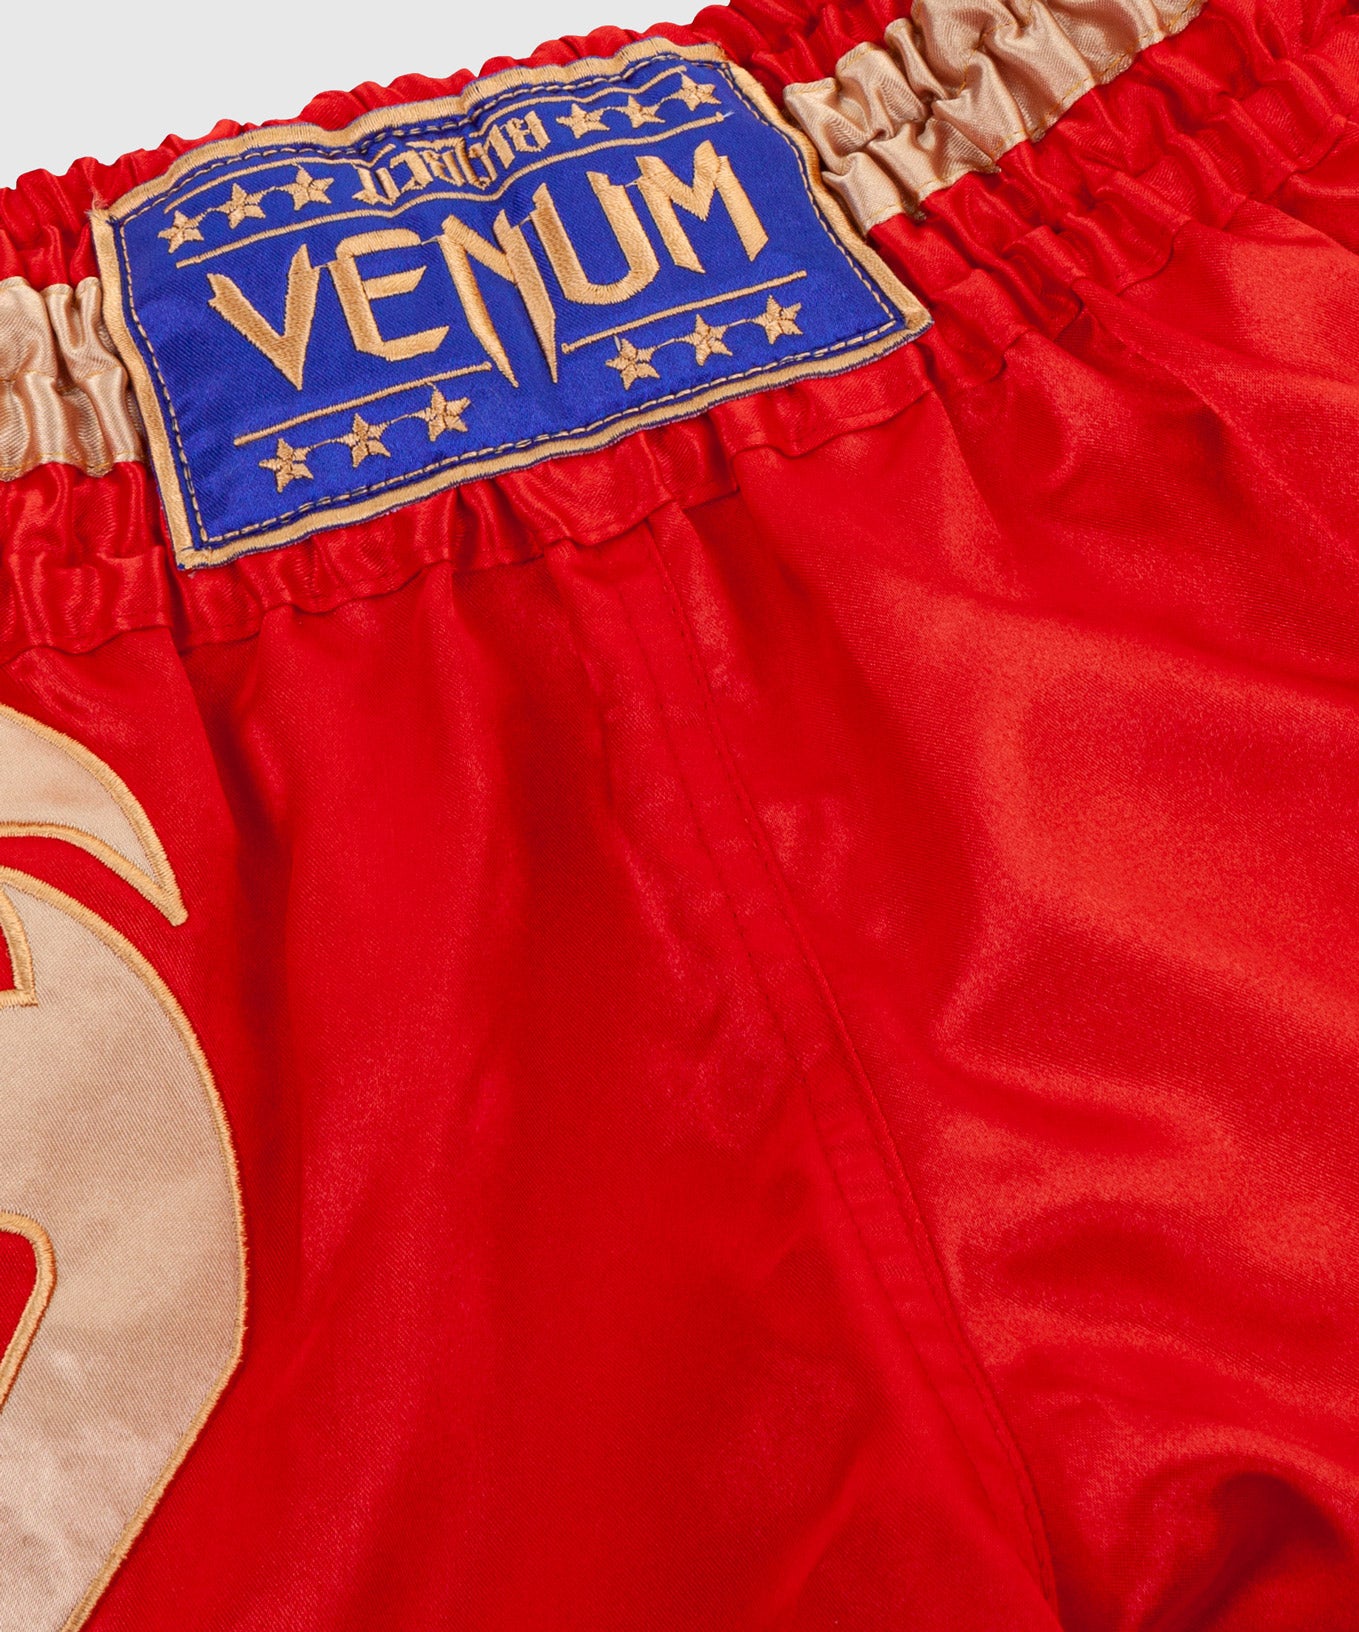 Pantalones Cortos de Muay Thai Venum Giant